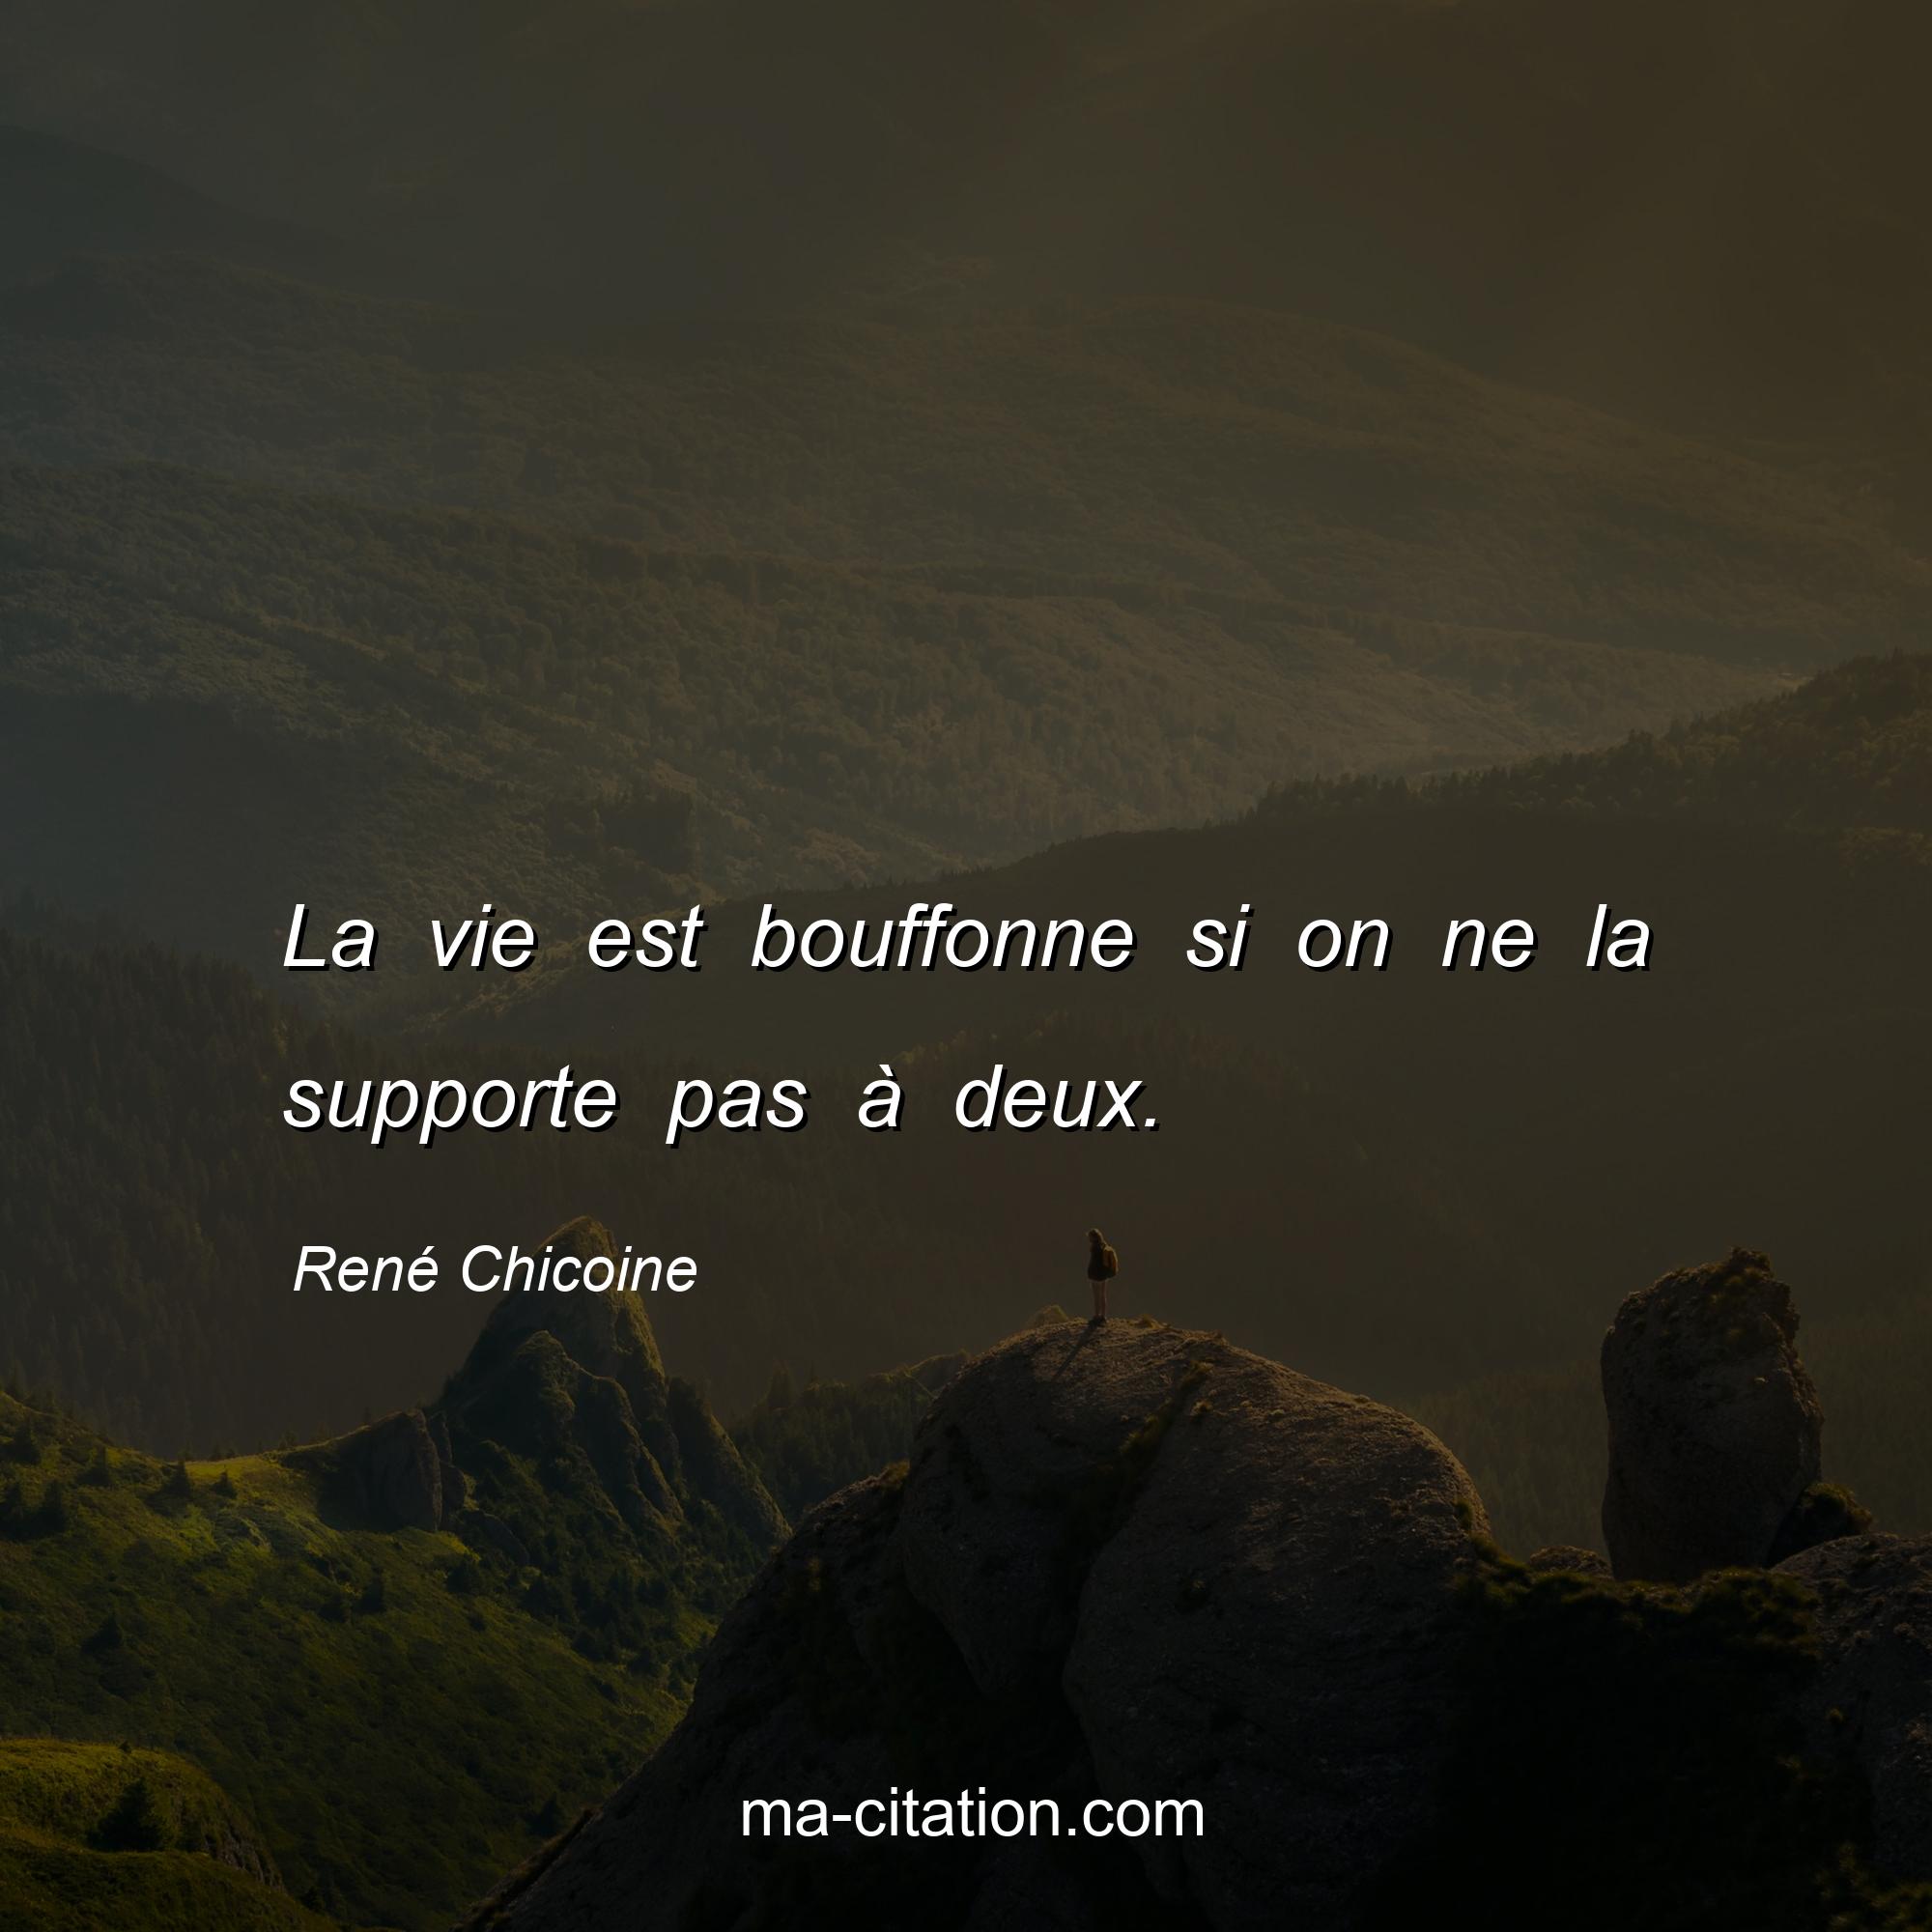 René Chicoine : La vie est bouffonne si on ne la supporte pas à deux.